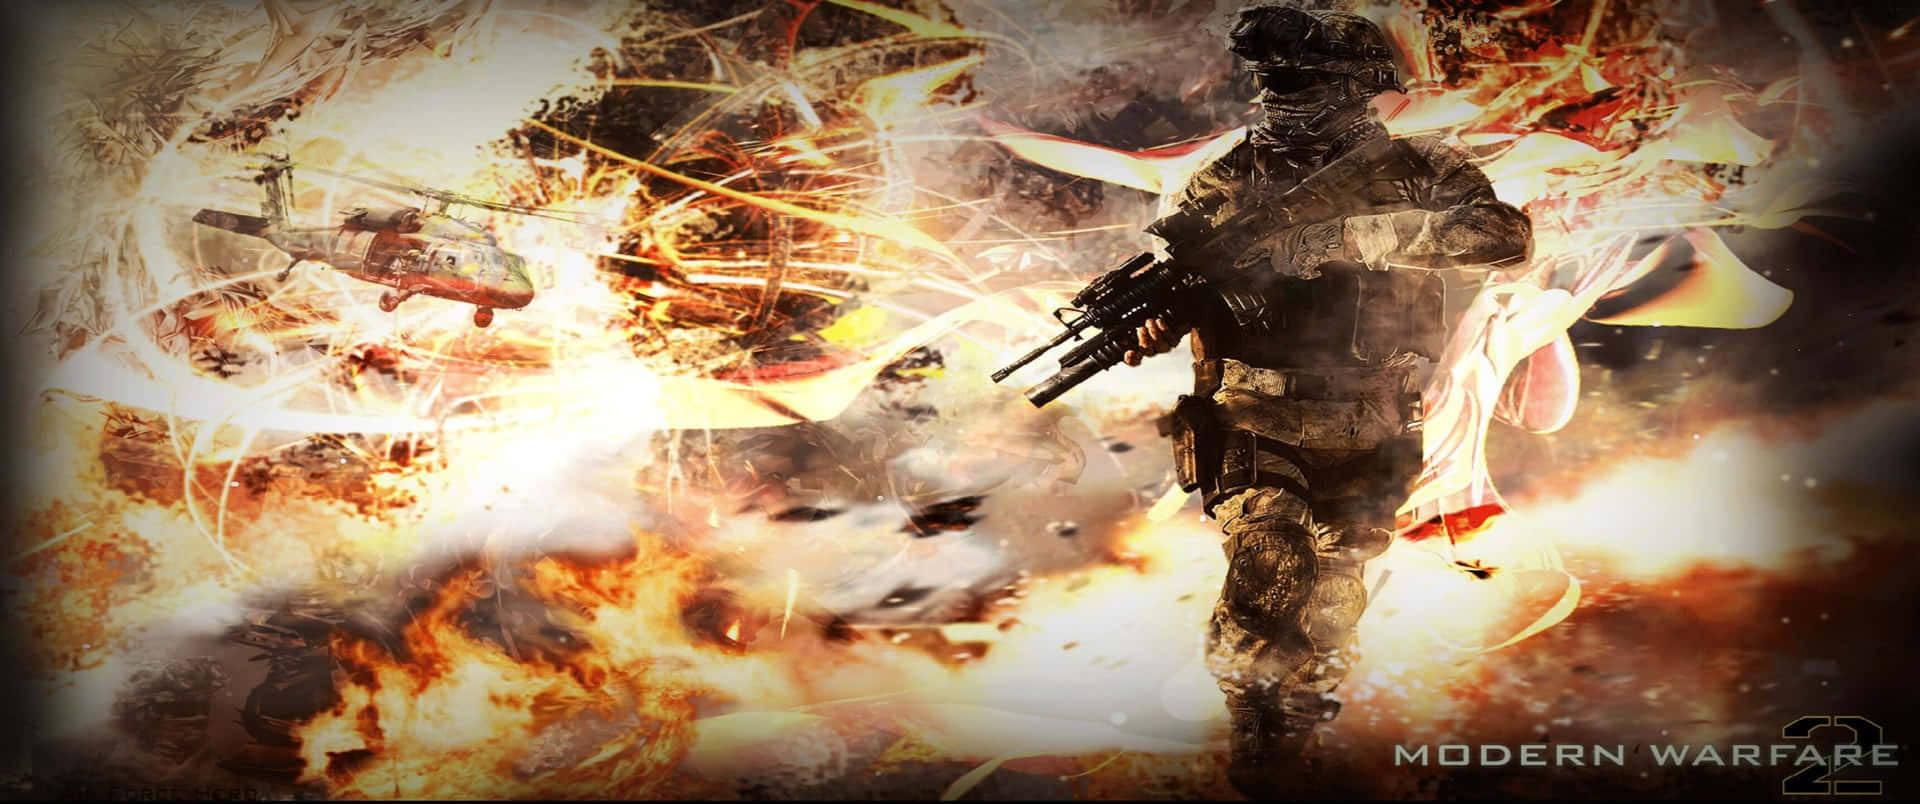 Grandeesplosione 3440x1440p Sfondo Di Call Of Duty Modern Warfare